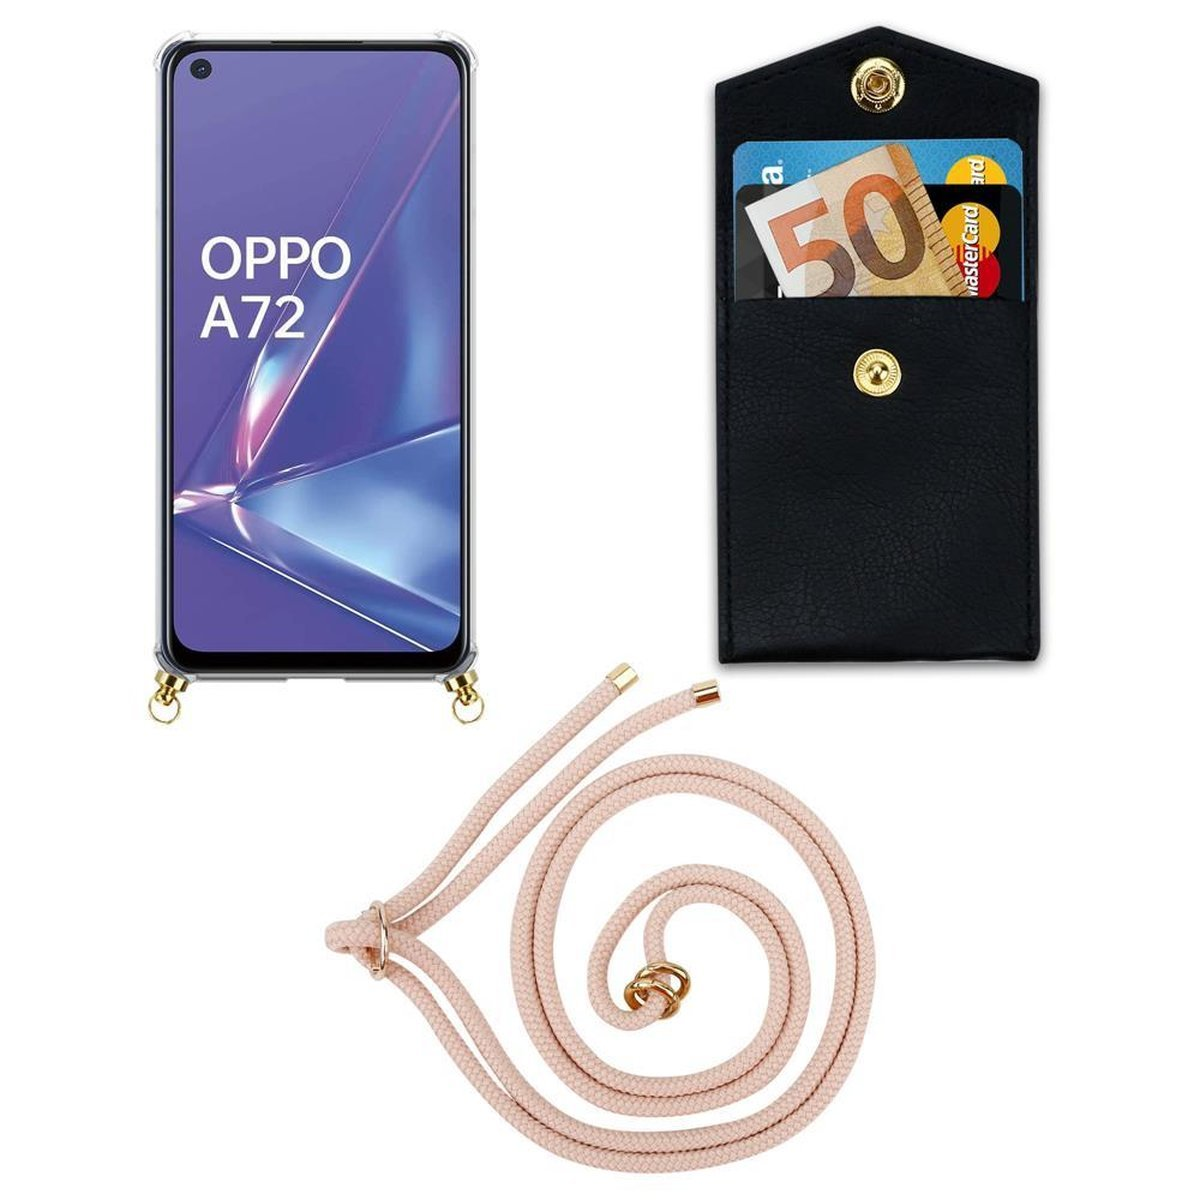 Handy Oppo, mit Kordel Backcover, Gold Ringen, Hülle, CADORABO und ROSÉGOLD abnehmbarer A52, PERLIG Band Kette